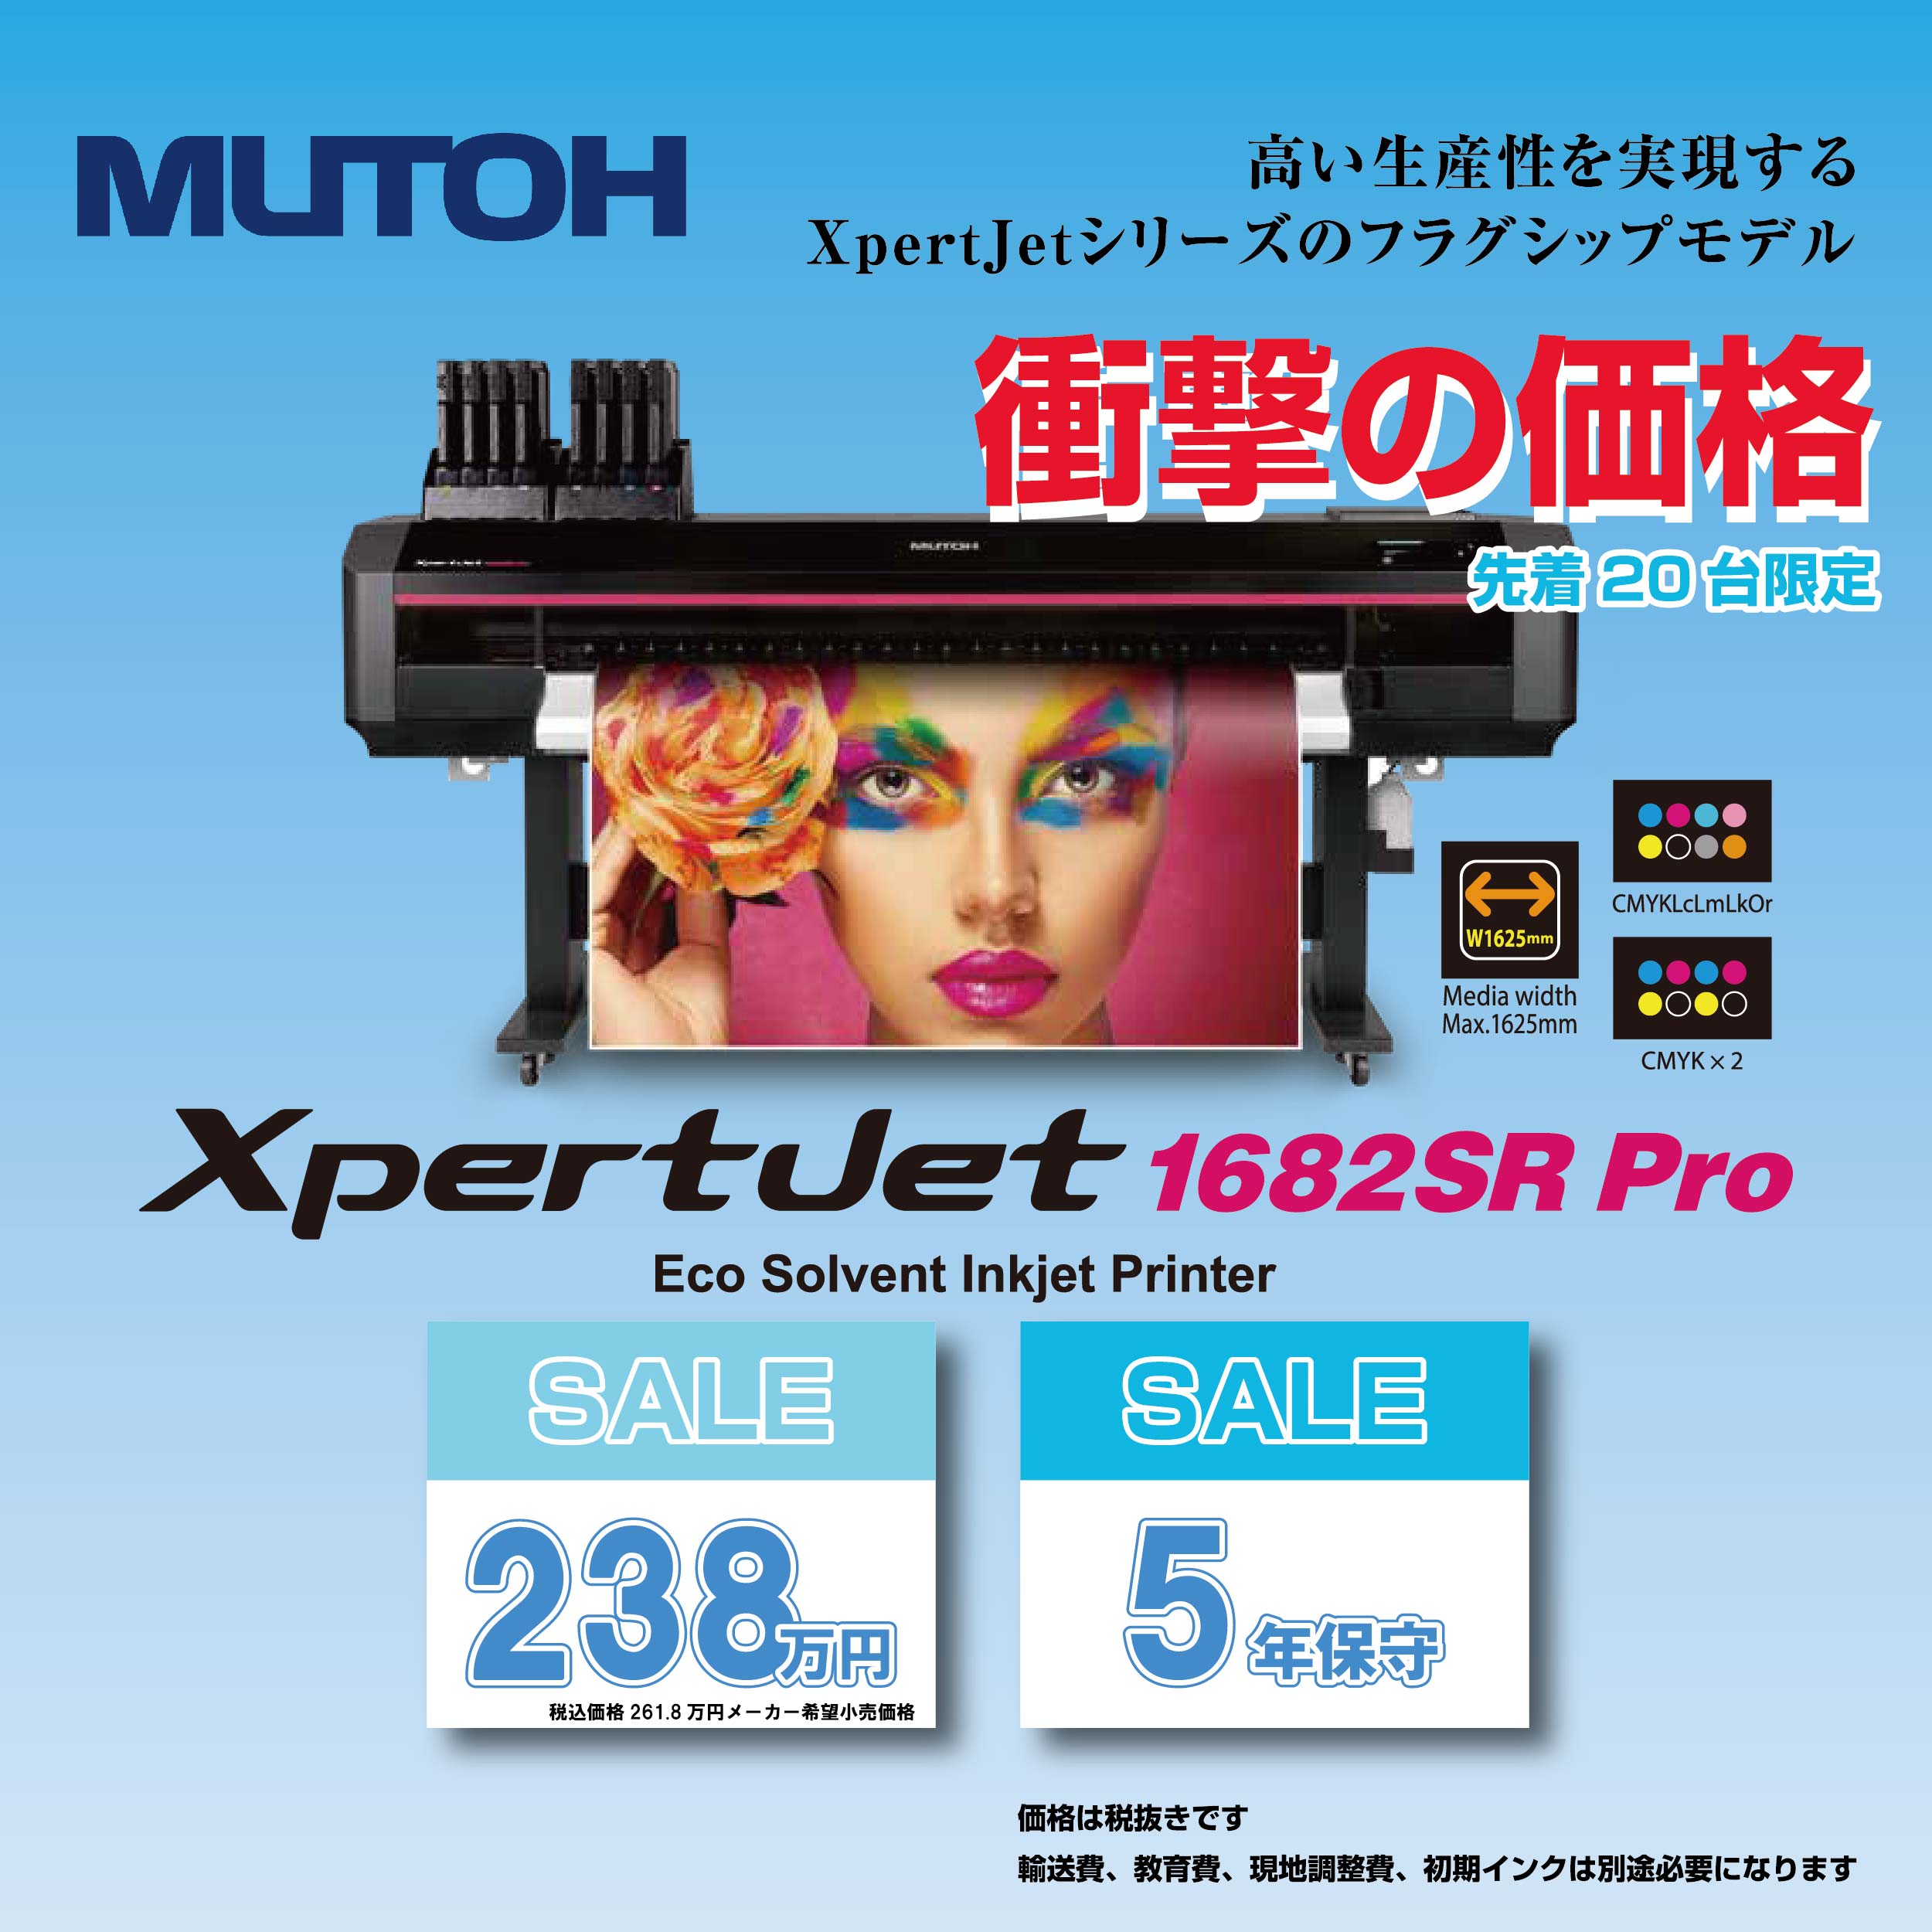 XpertJet1682SR Pro サマーキャンペーン実施中!!